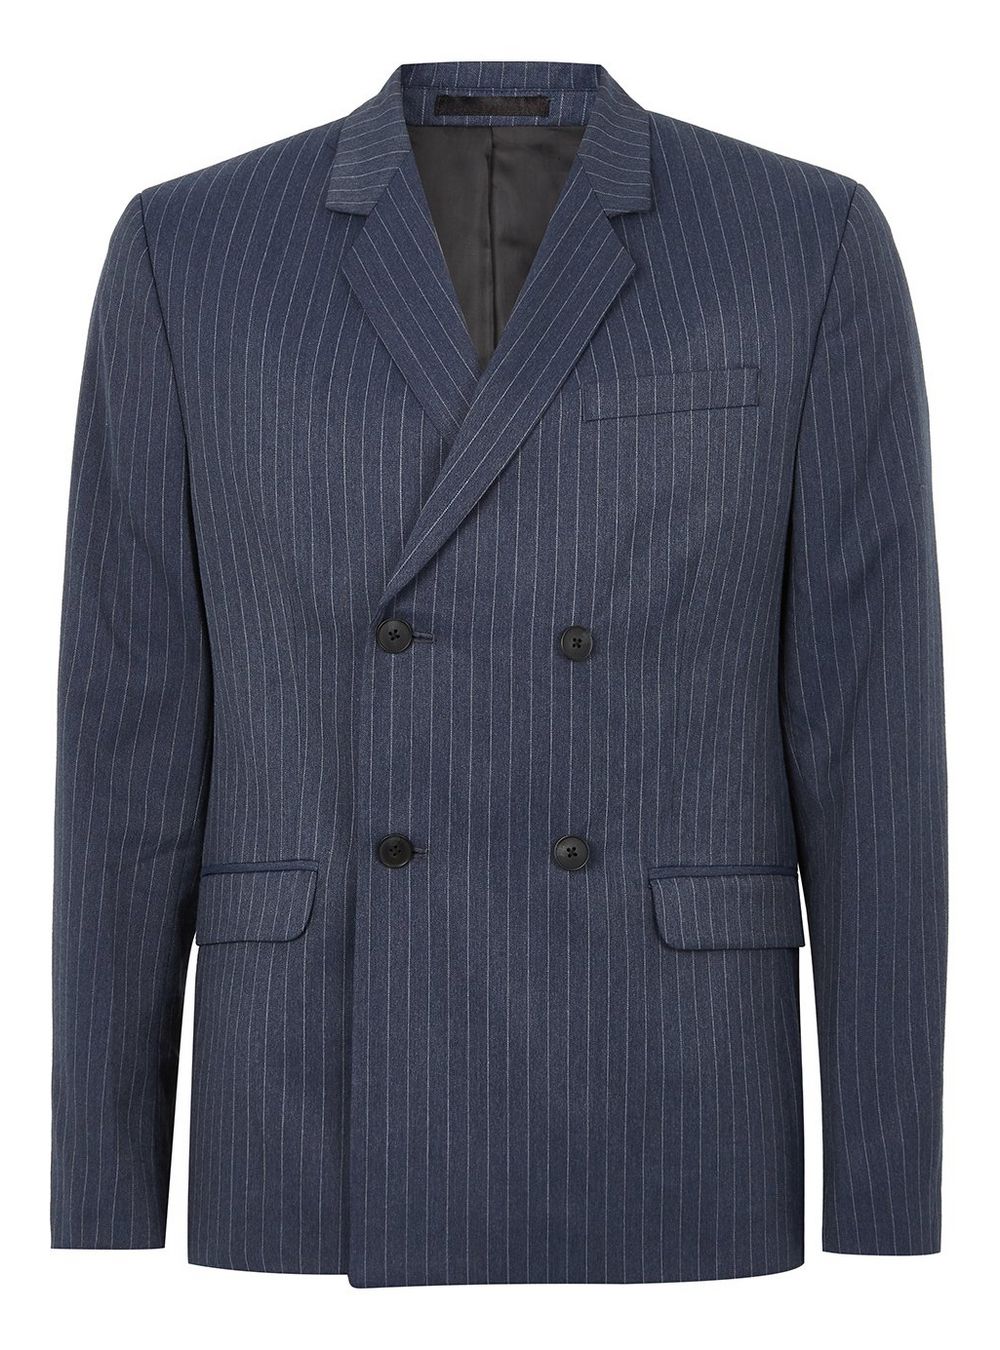 Topman Blue Pinstripe Jacket